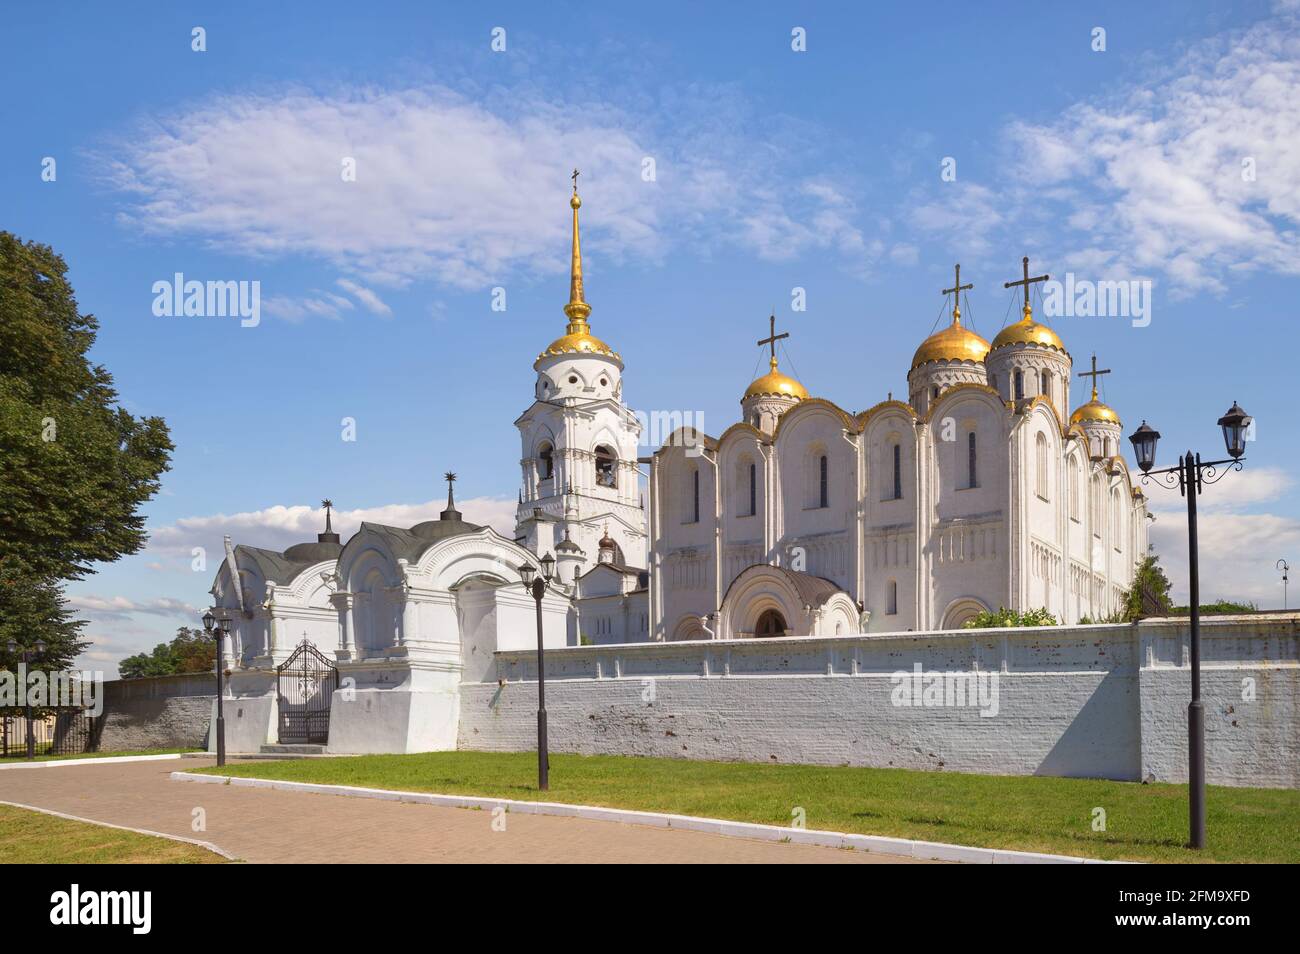 Das Heilige Mariä-Entschlafen Kathedrale in Wladimir. Die ursprüngliche Kathedrale aus weißem Stein wurde 1158-1160 gebaut. Russland Stockfoto